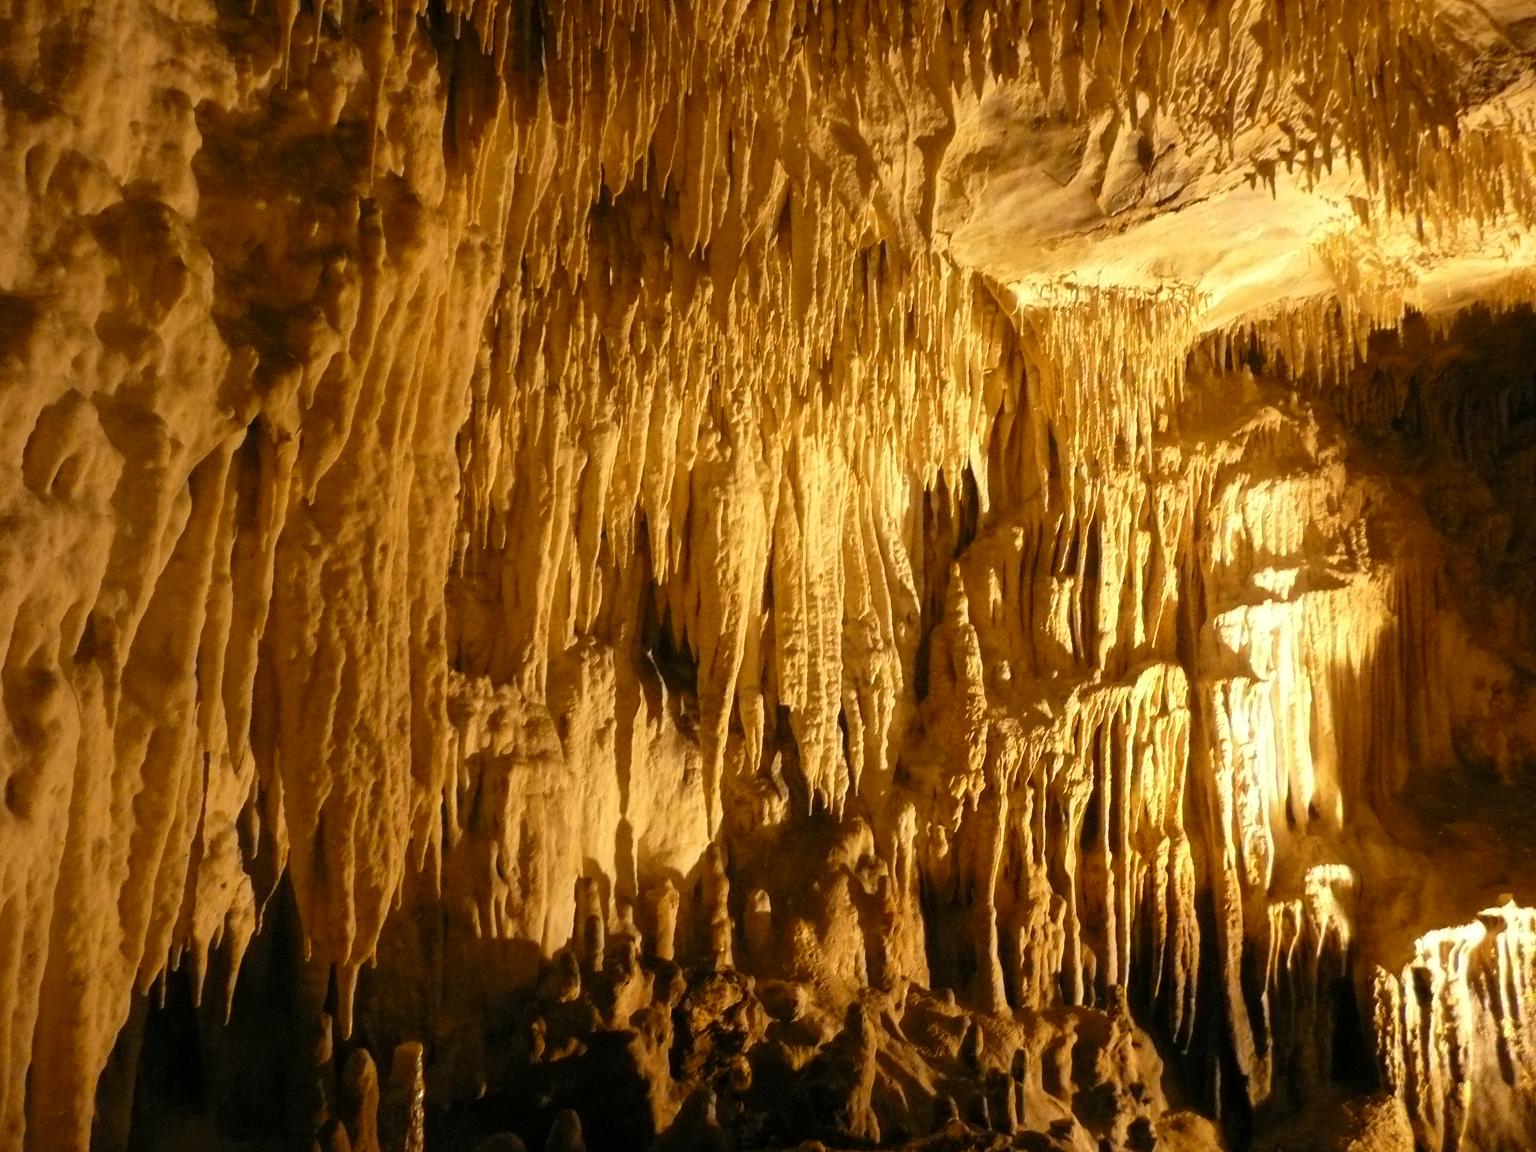 Καστοριά : Κλειστό μέχρι 26 Απριλίου το Σπήλαιο της Καστοριάς